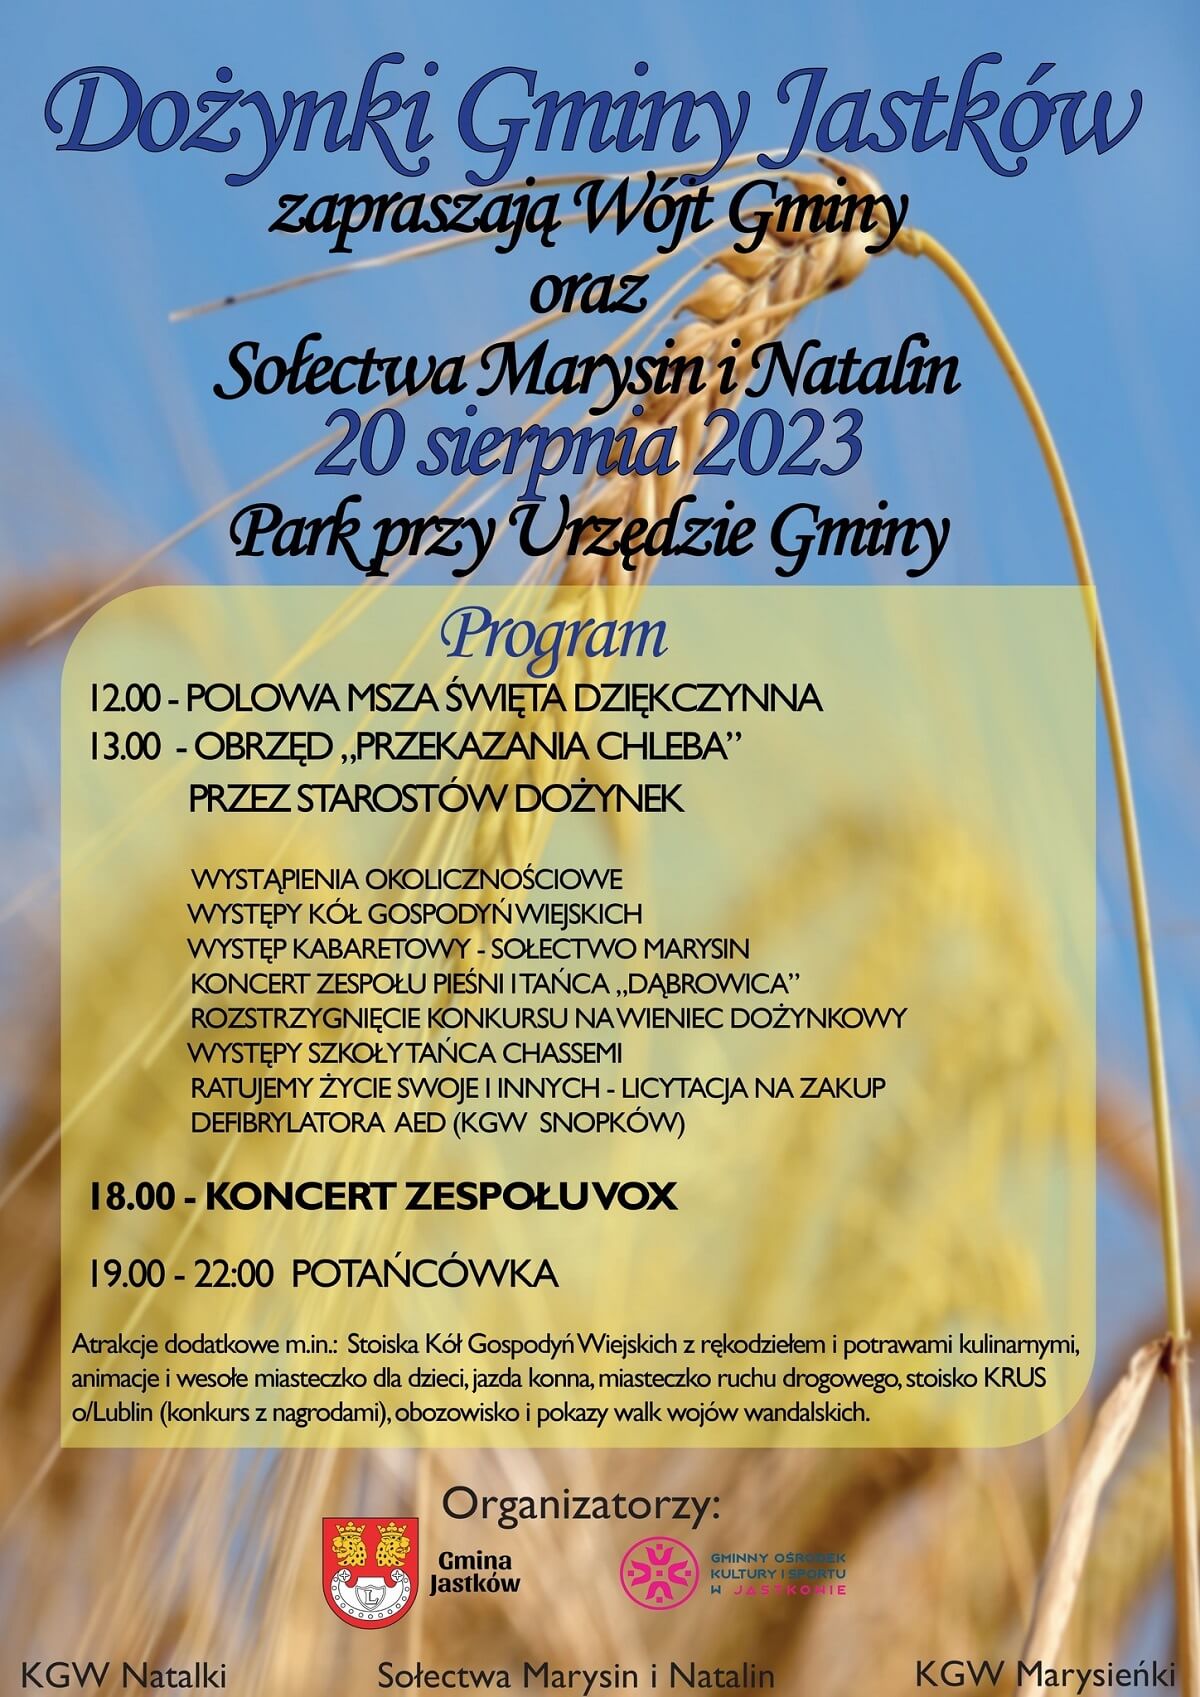 Dożynki w Jastkowie 2023 - plakat, program wydarzenia